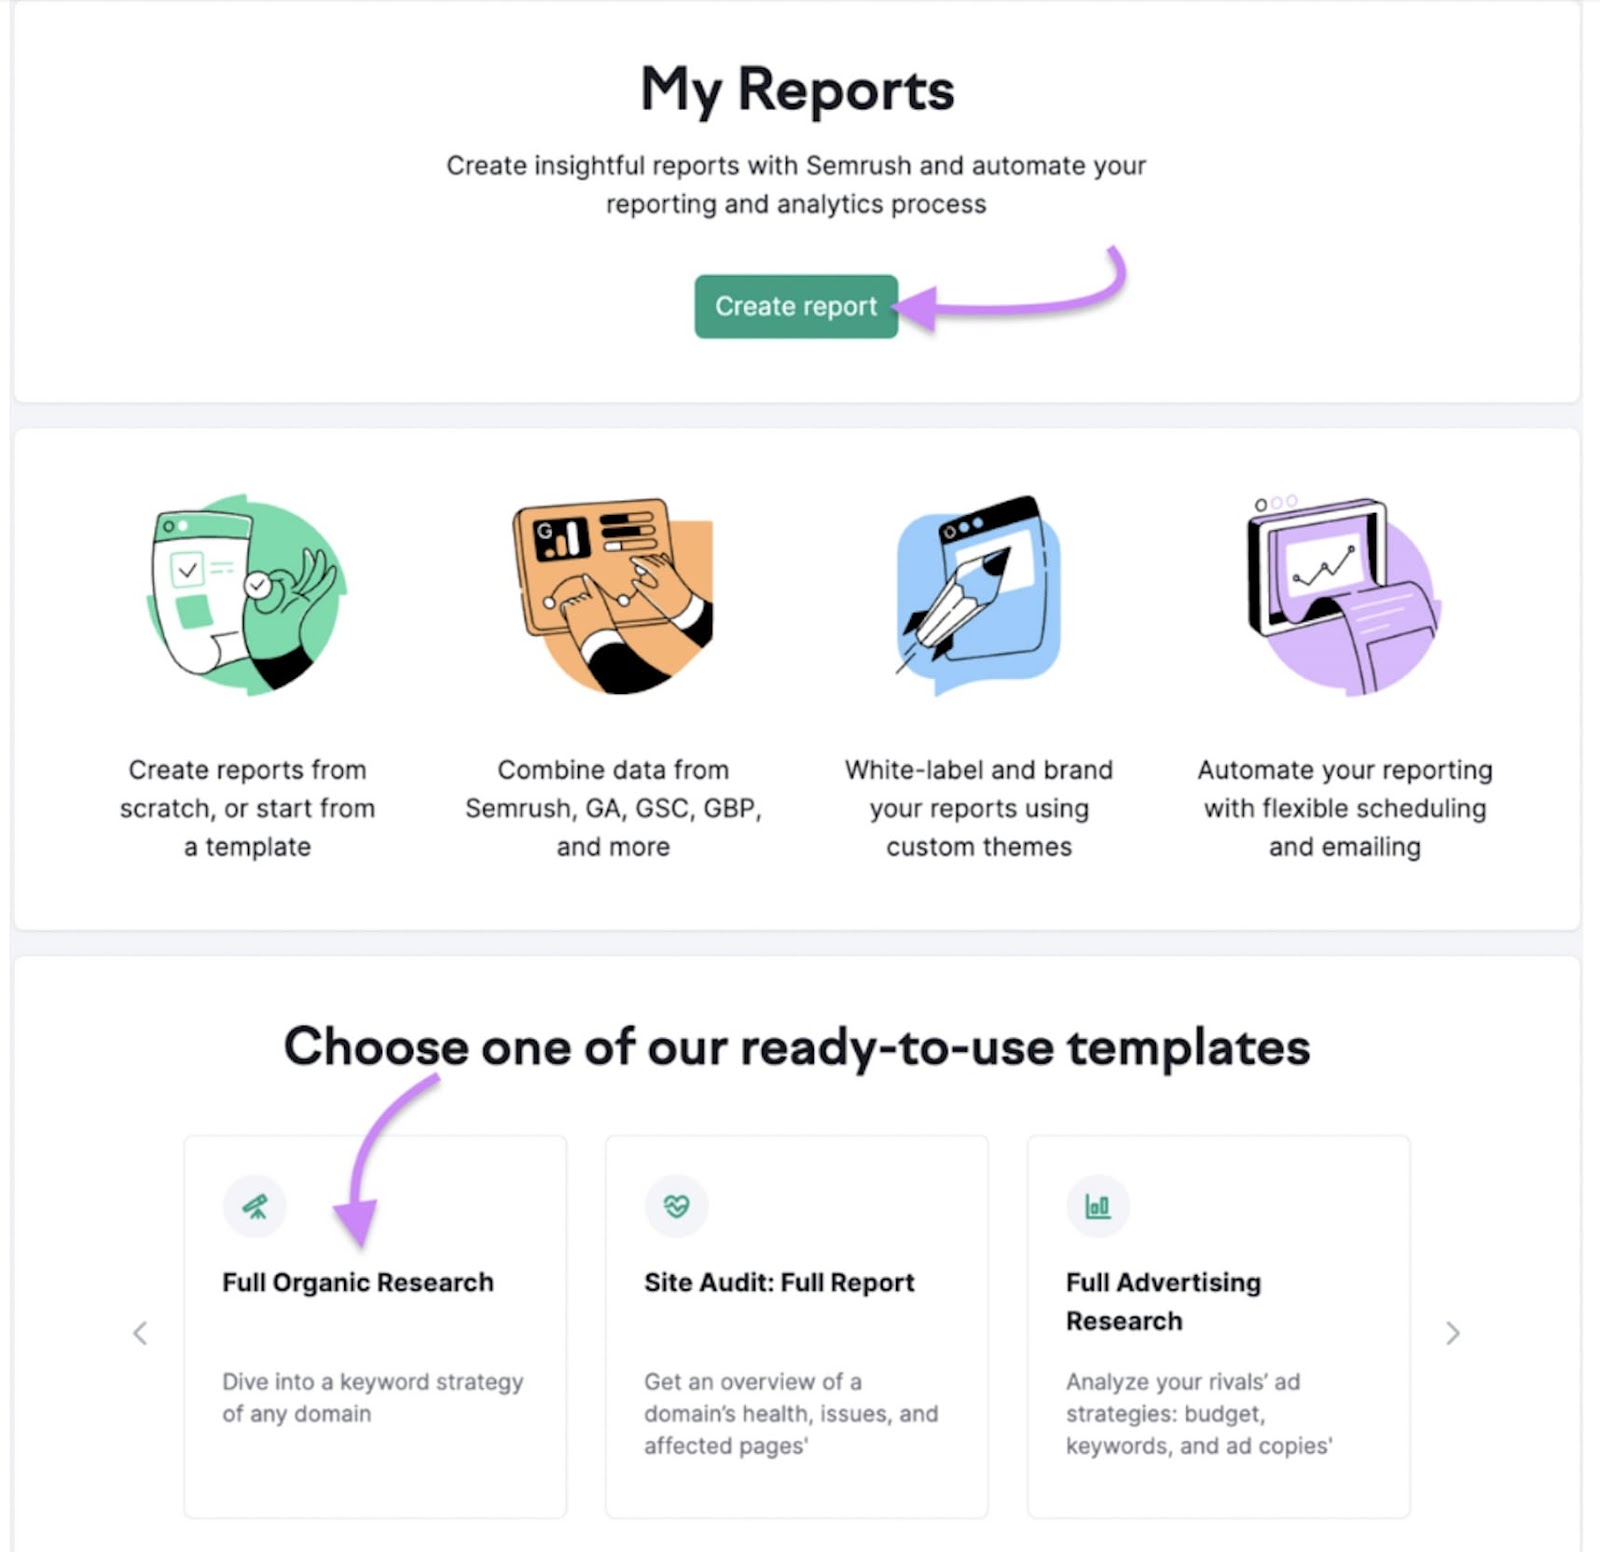 Semrush’s My Reports tool